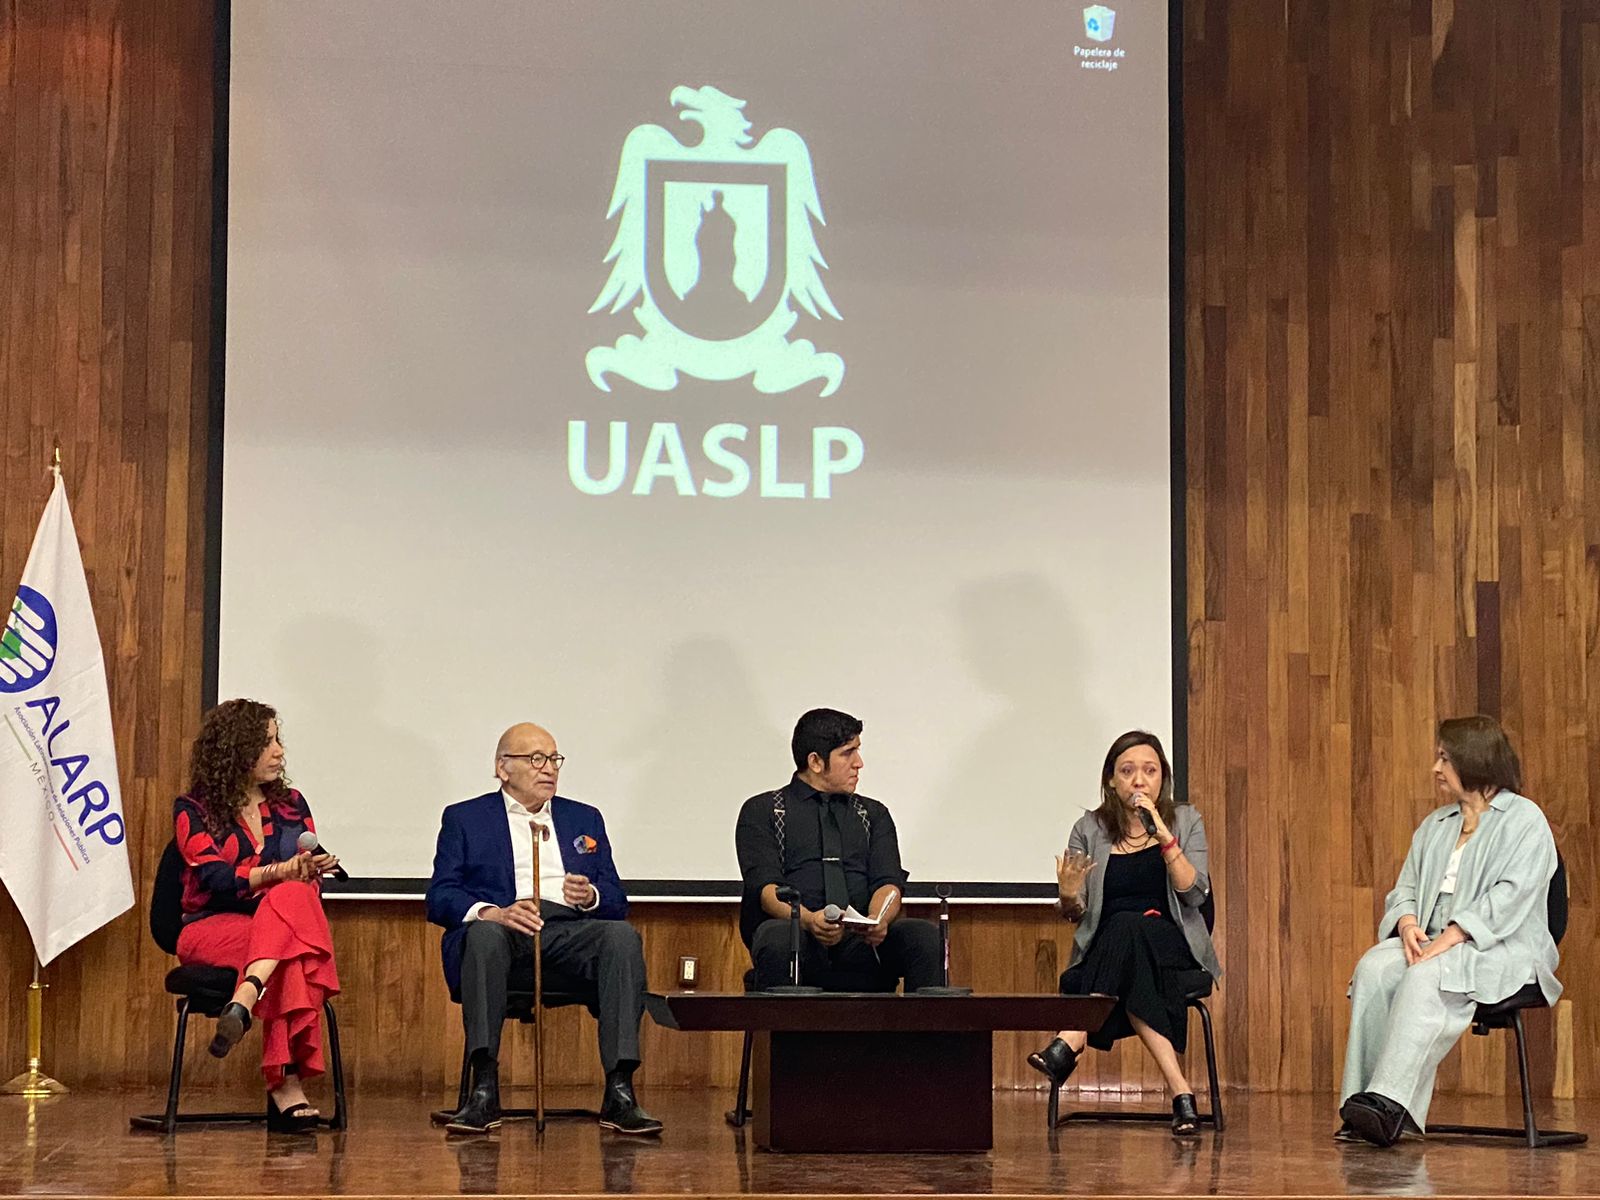 El conferencista consideró que el Congreso de la Asociación Latinoamericana de Relaciones Públicas (ALARP) resultó una gran experiencia